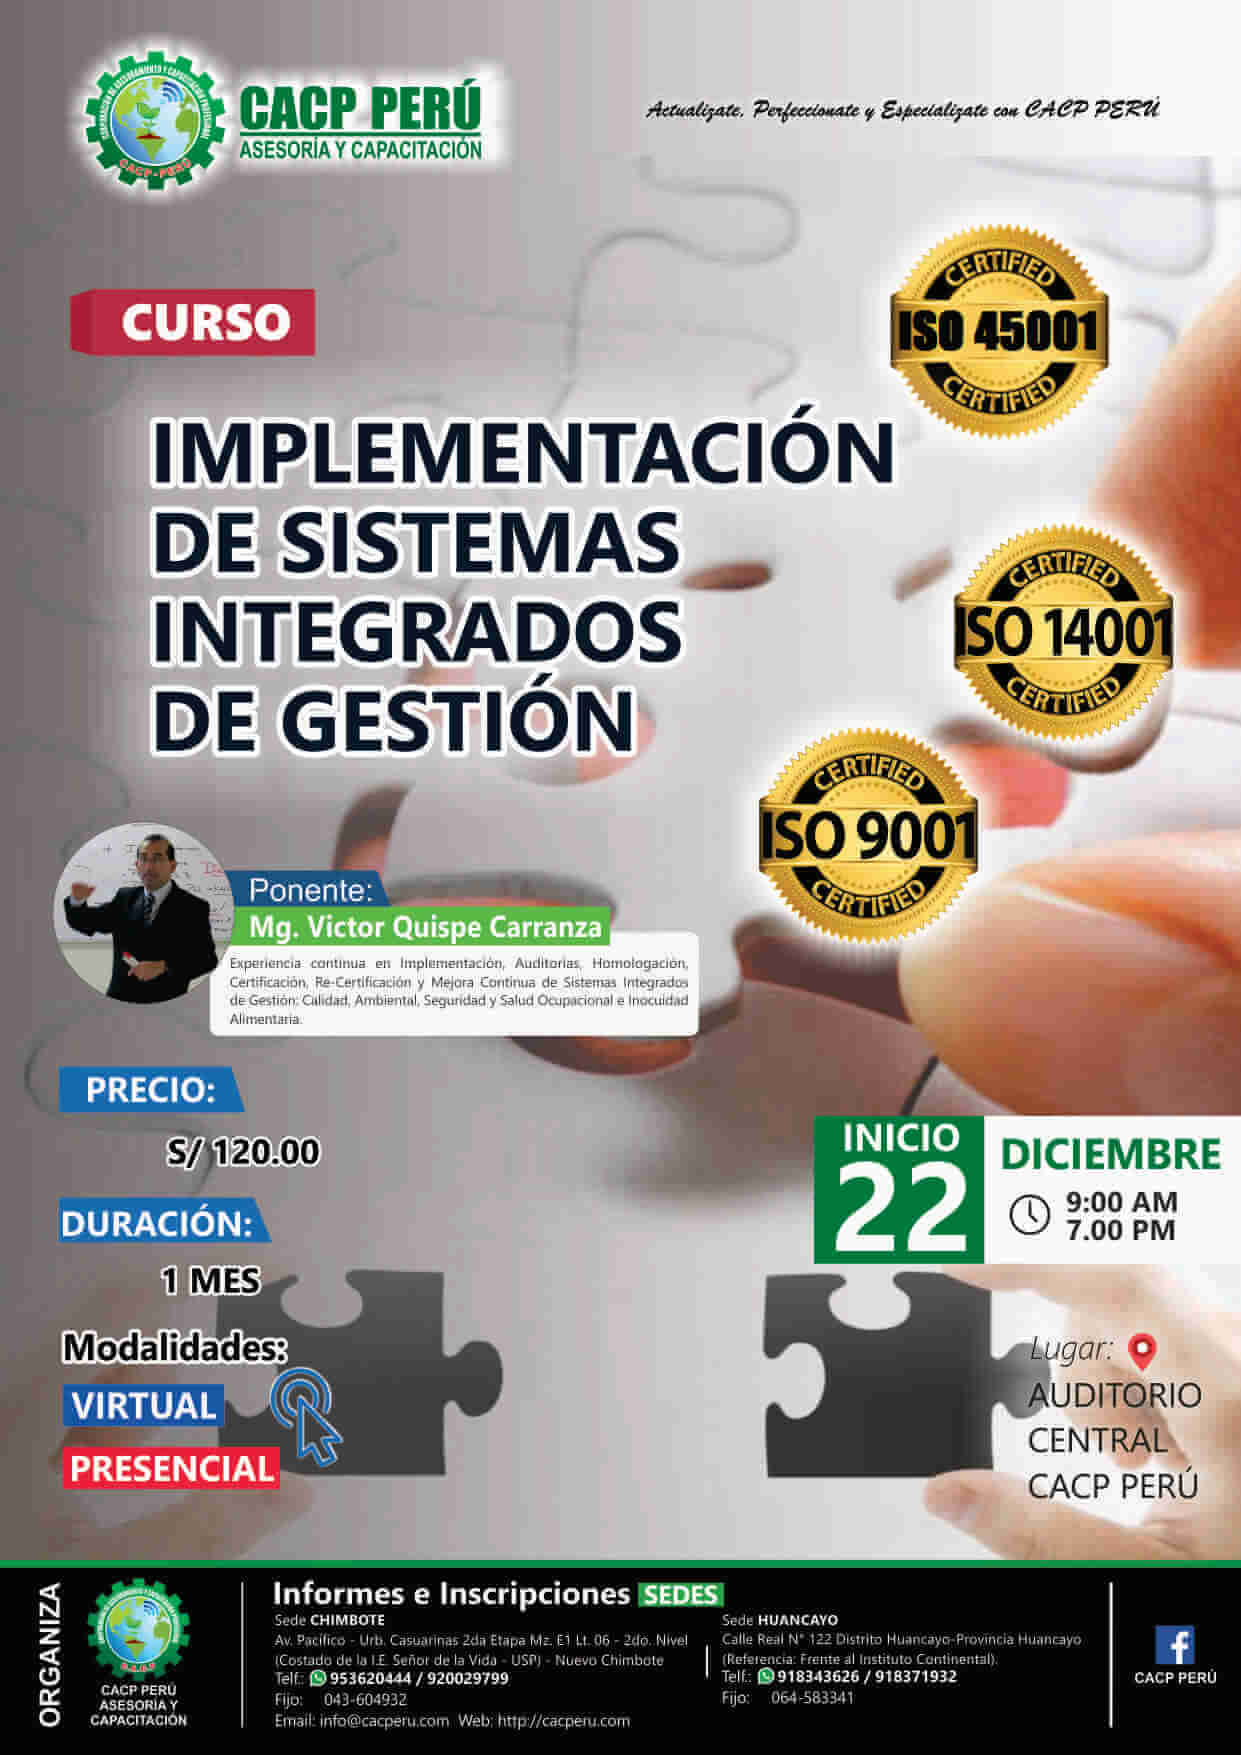 Cacp Perú Curso Implementación De Sistemas Integrados De Gestión 2018 2 5821